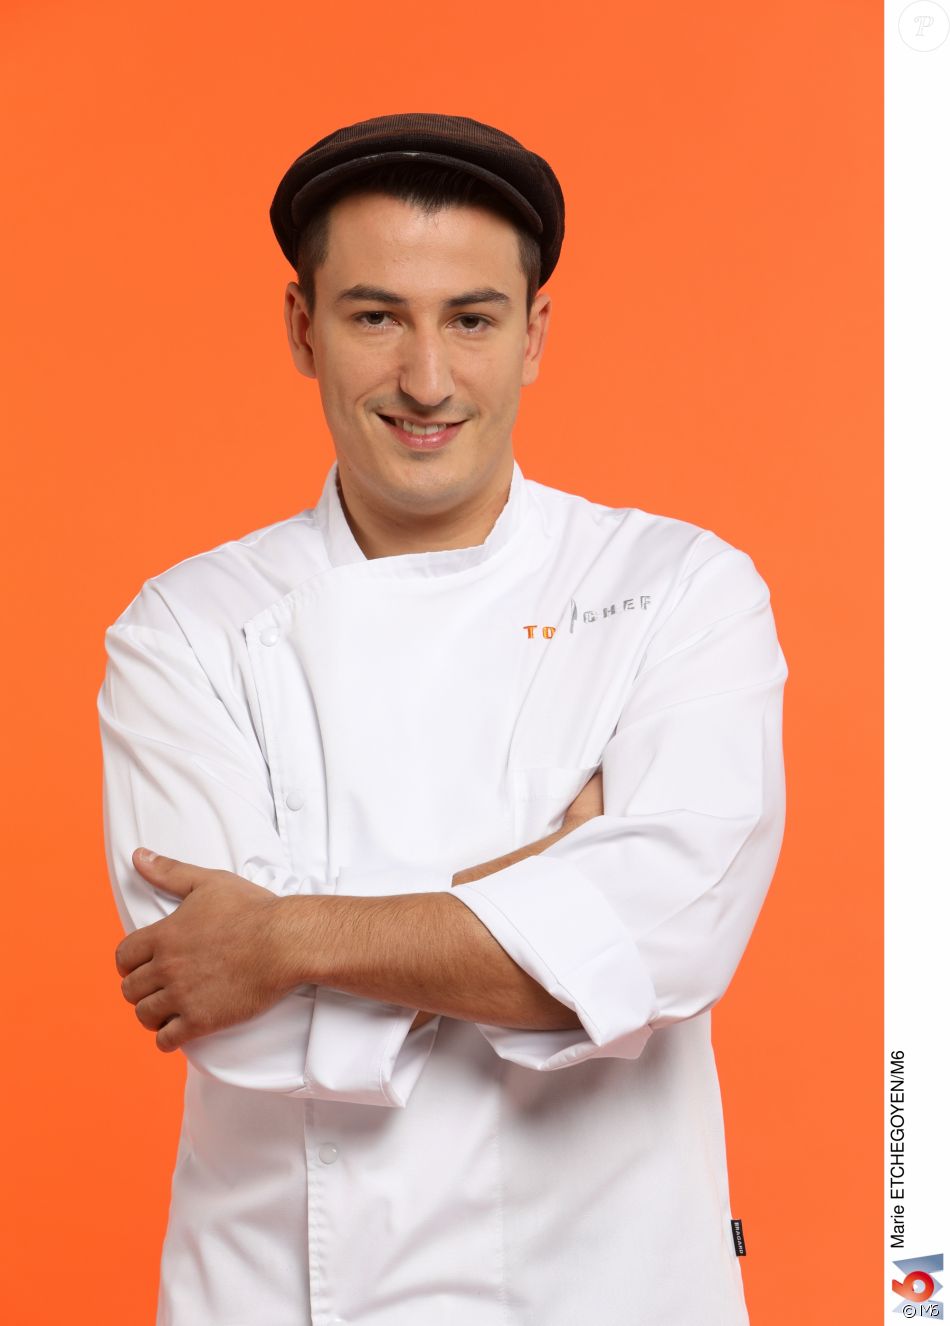 Top Chef 2017 - Épisode 06 - Mercredi 01 Mars - 21h00 - M6 - Page 2 2946515-jeremie-izarn-27-ans-candidat-de-to-950x0-3